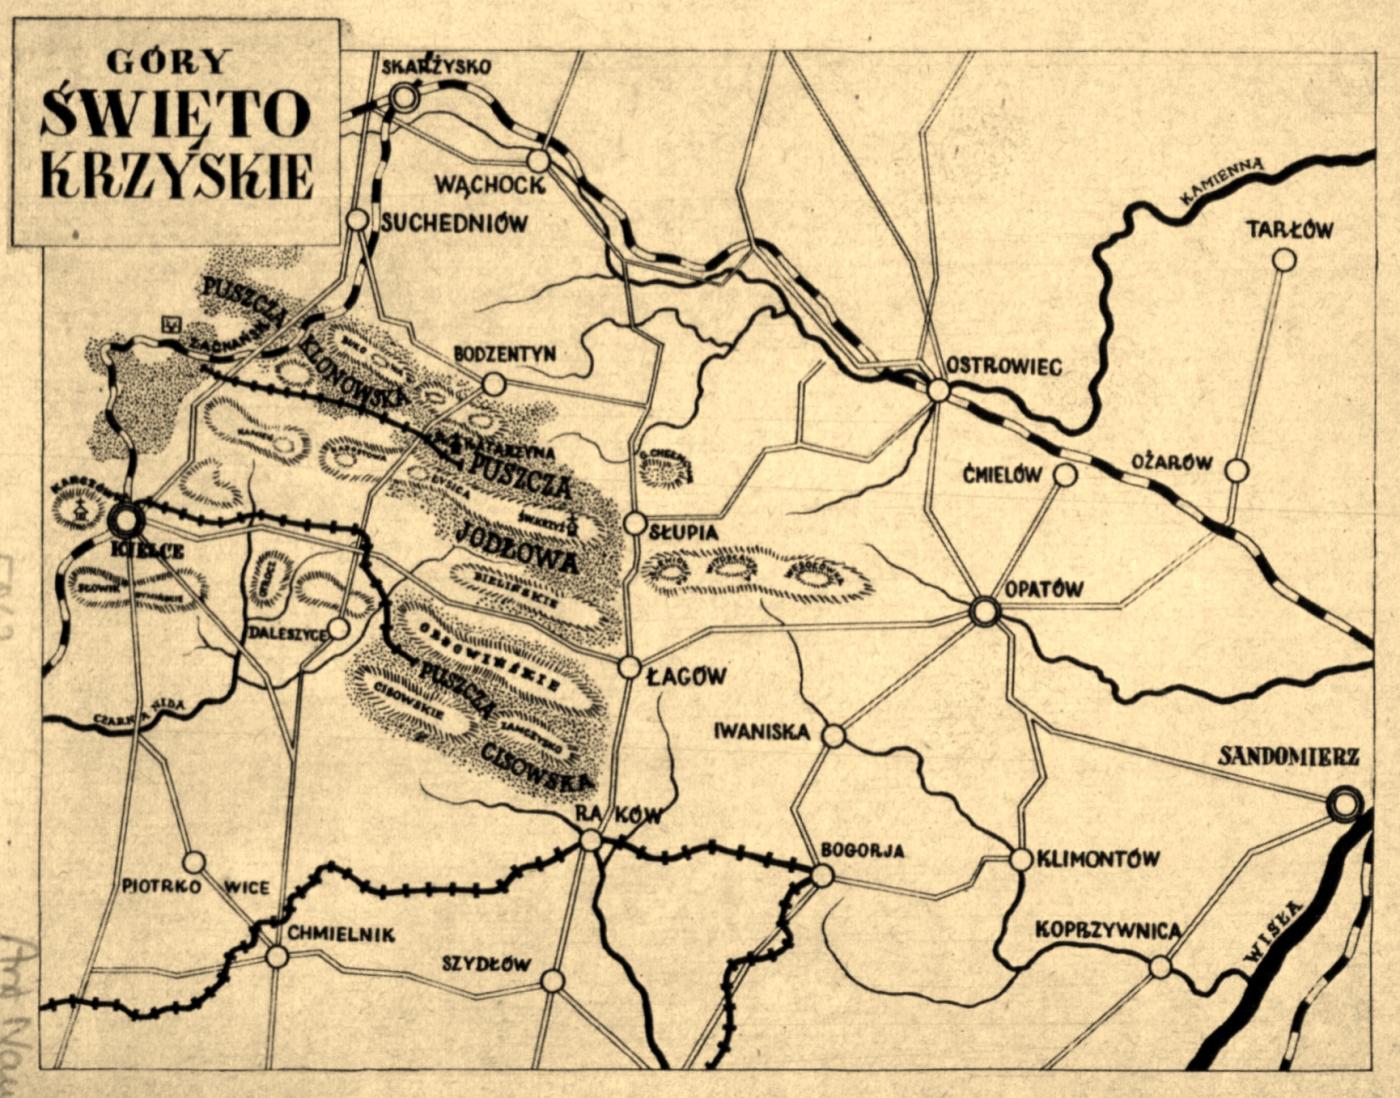 Mapa Gór Świętokrzyskich z przewodnika Al. Patkowskiego z lat 30. XX w. (Polona)